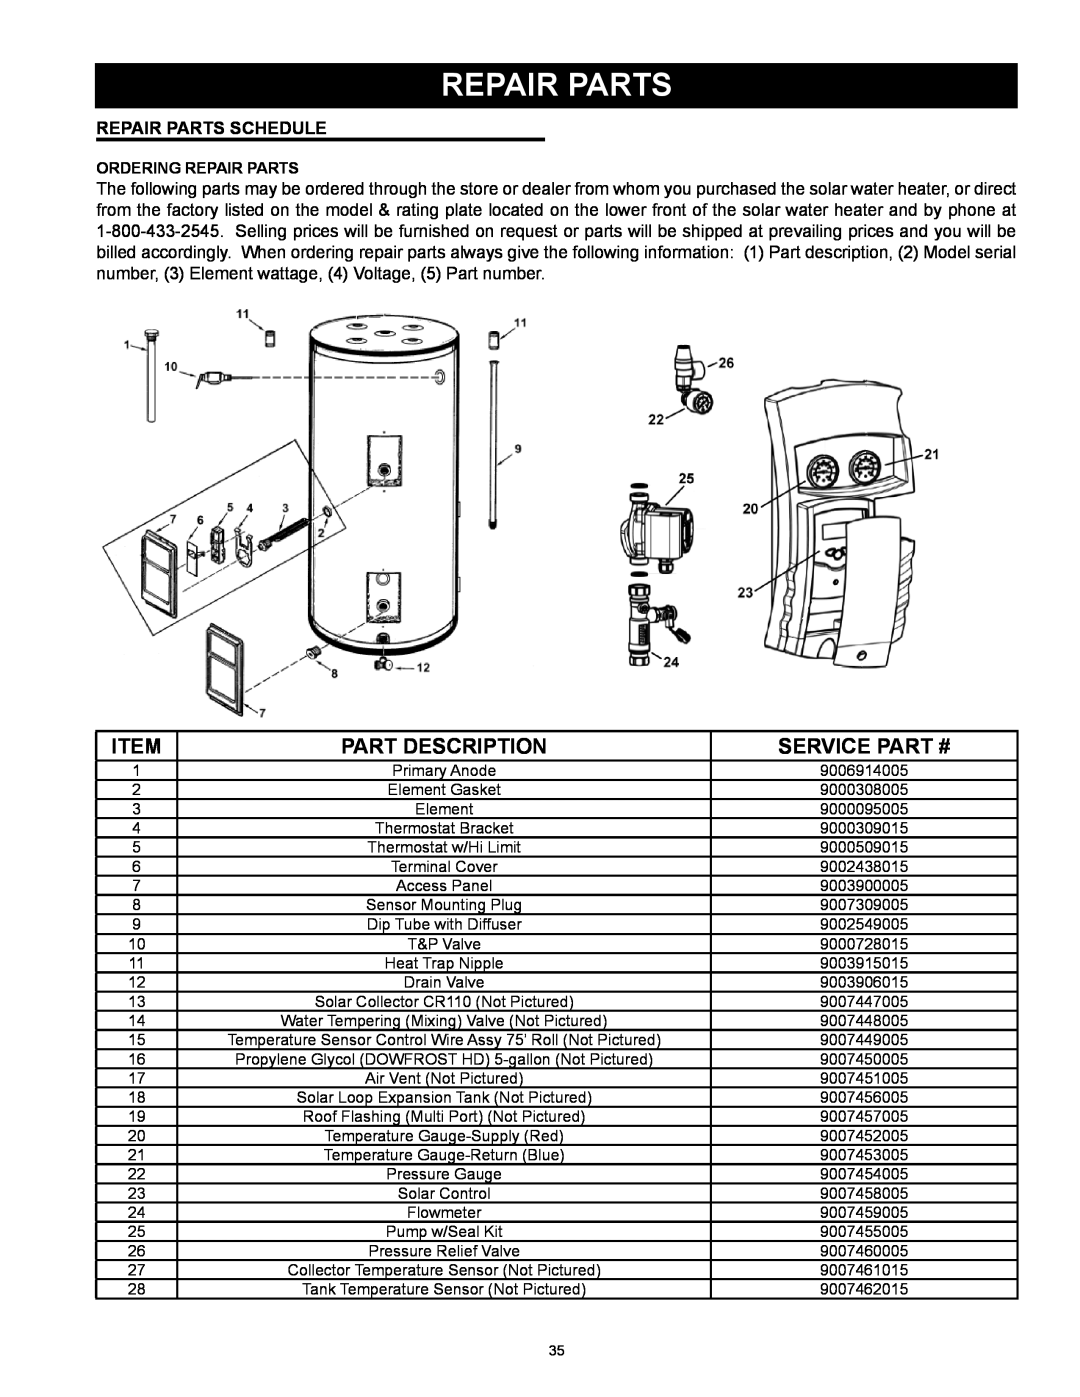 American Water Heater 318281-000 instruction manual Part Description, Service Part #, Repair Parts Schedule 